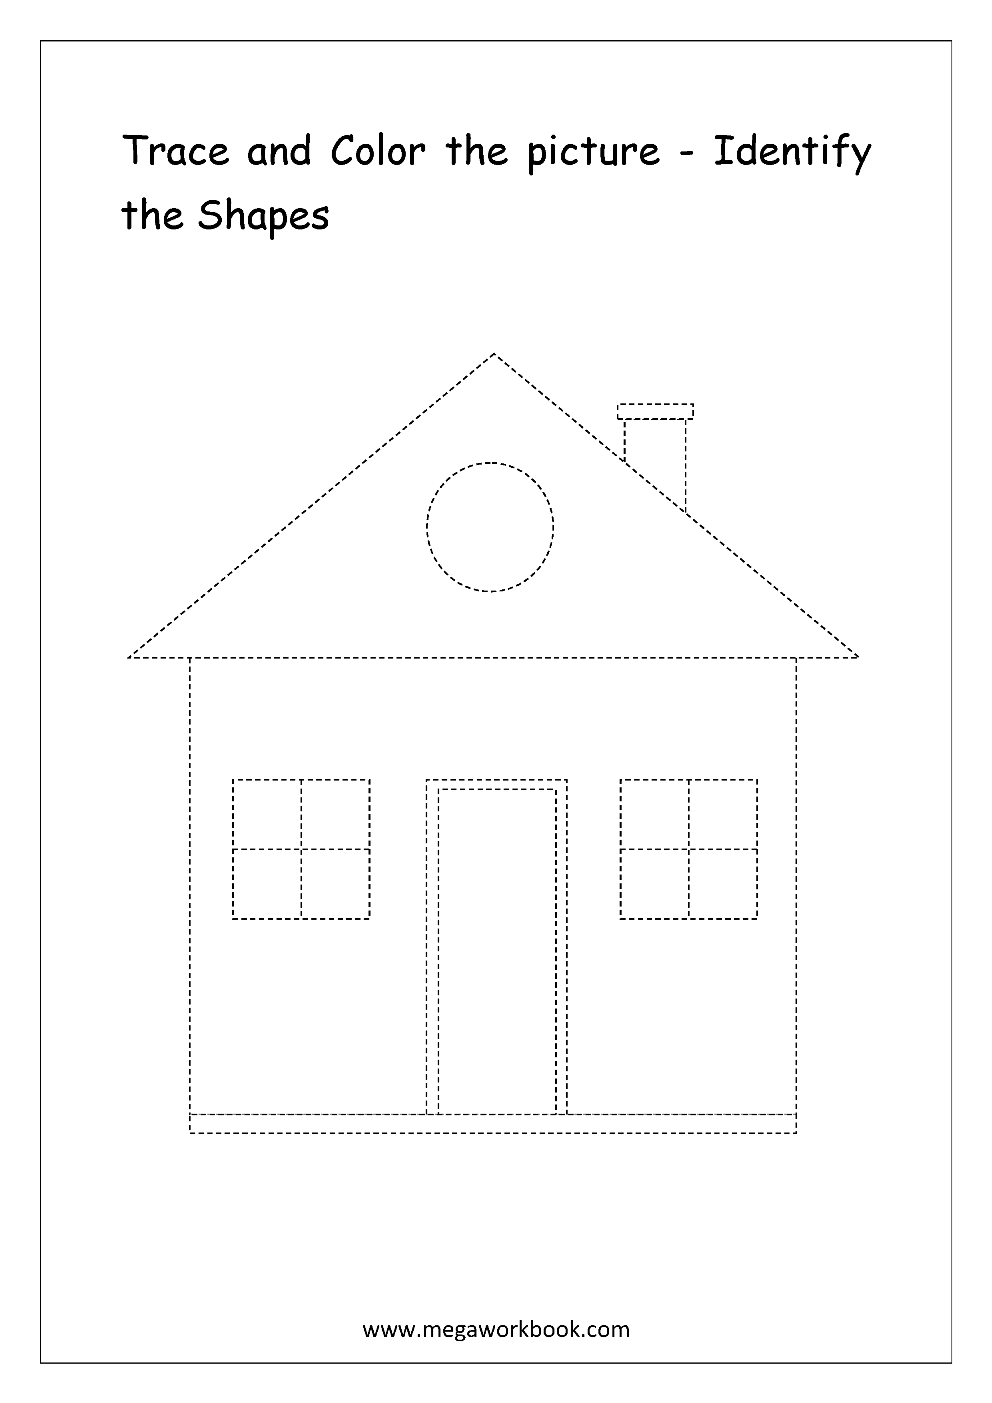 Free Printable Identifying Shapes Worksheets - Identify Basic Shapes